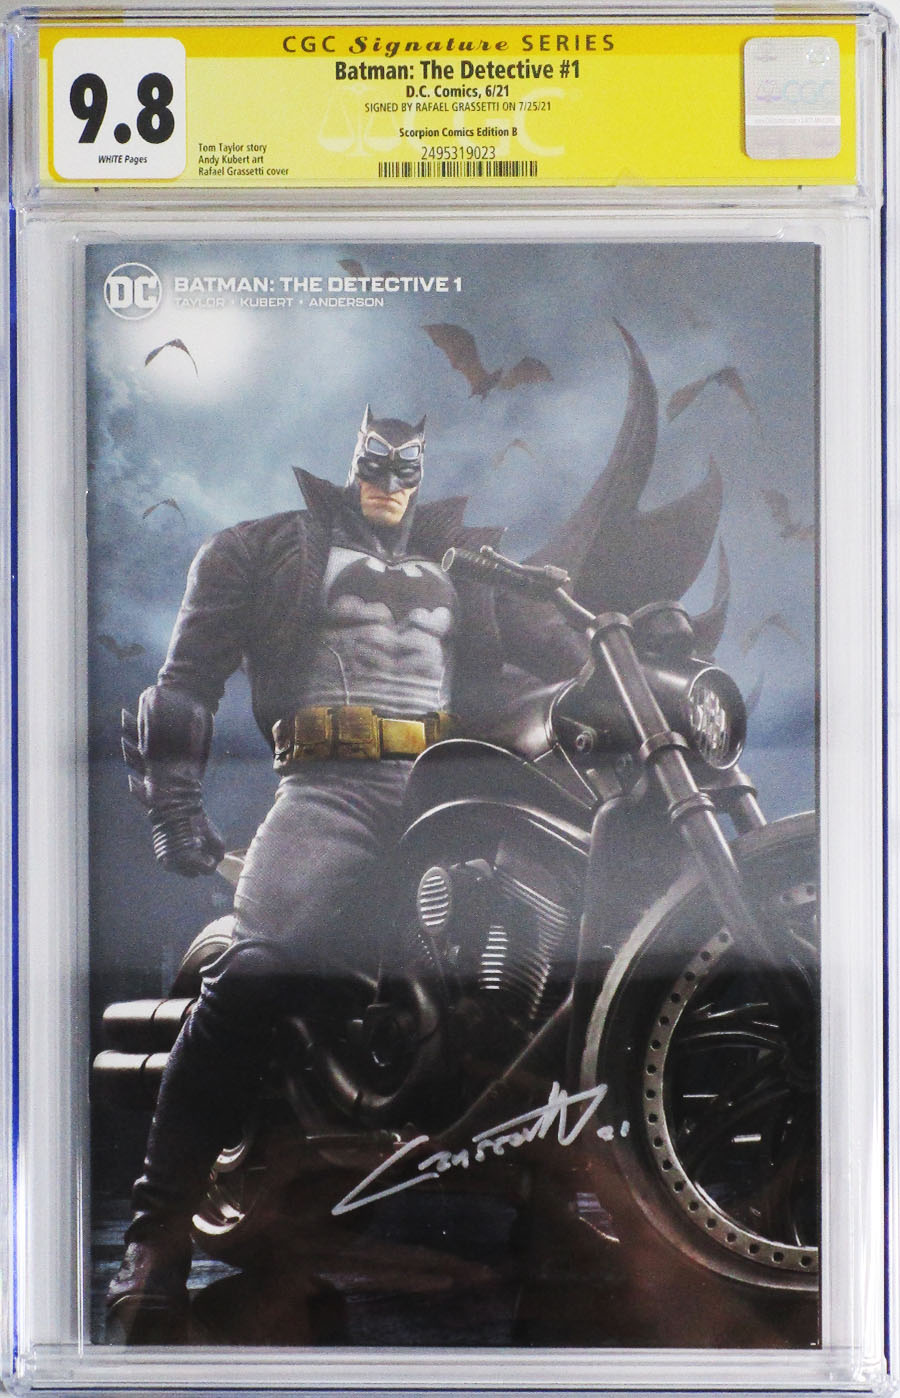 Batman The Detective #1 Cover F CGC Signature Series 9.8 Rafael Grassetti Variant Signed by Rafael Grassetti